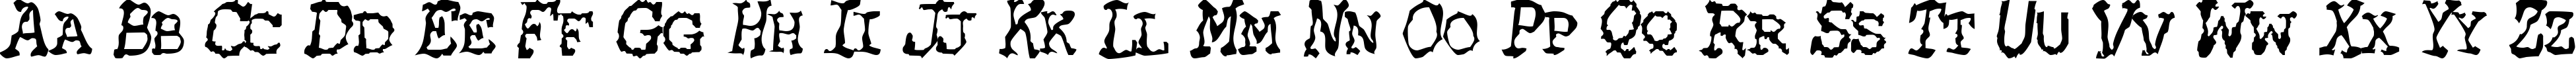 Пример написания английского алфавита шрифтом HEATWAVE